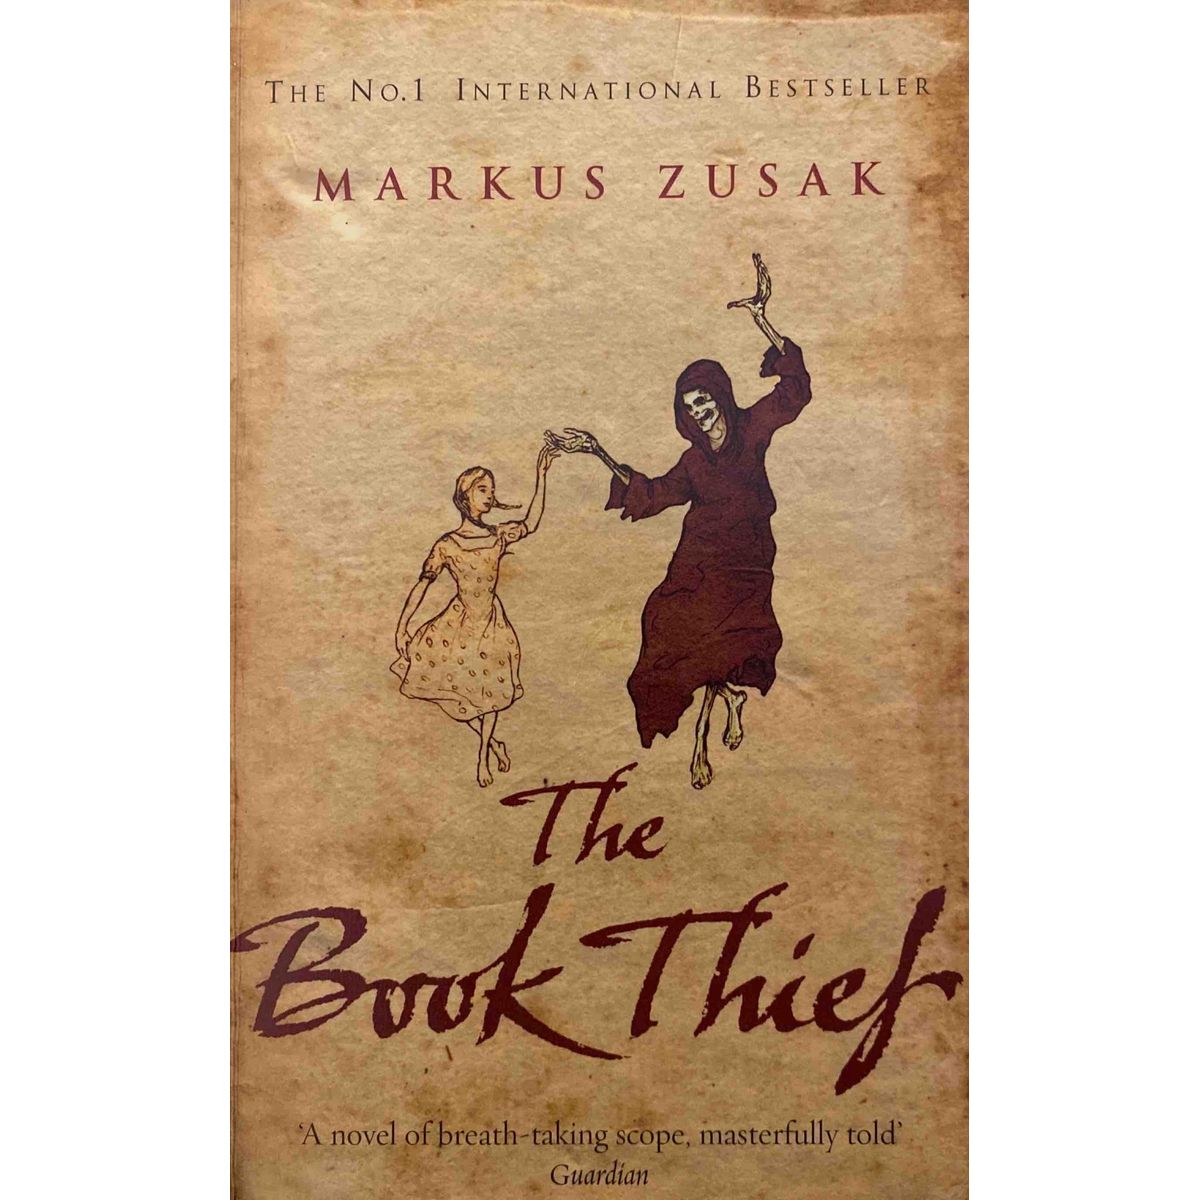 ISBN: 9780552773898 / 0552773891 - The Book Thief by Markus Zusak [2007]